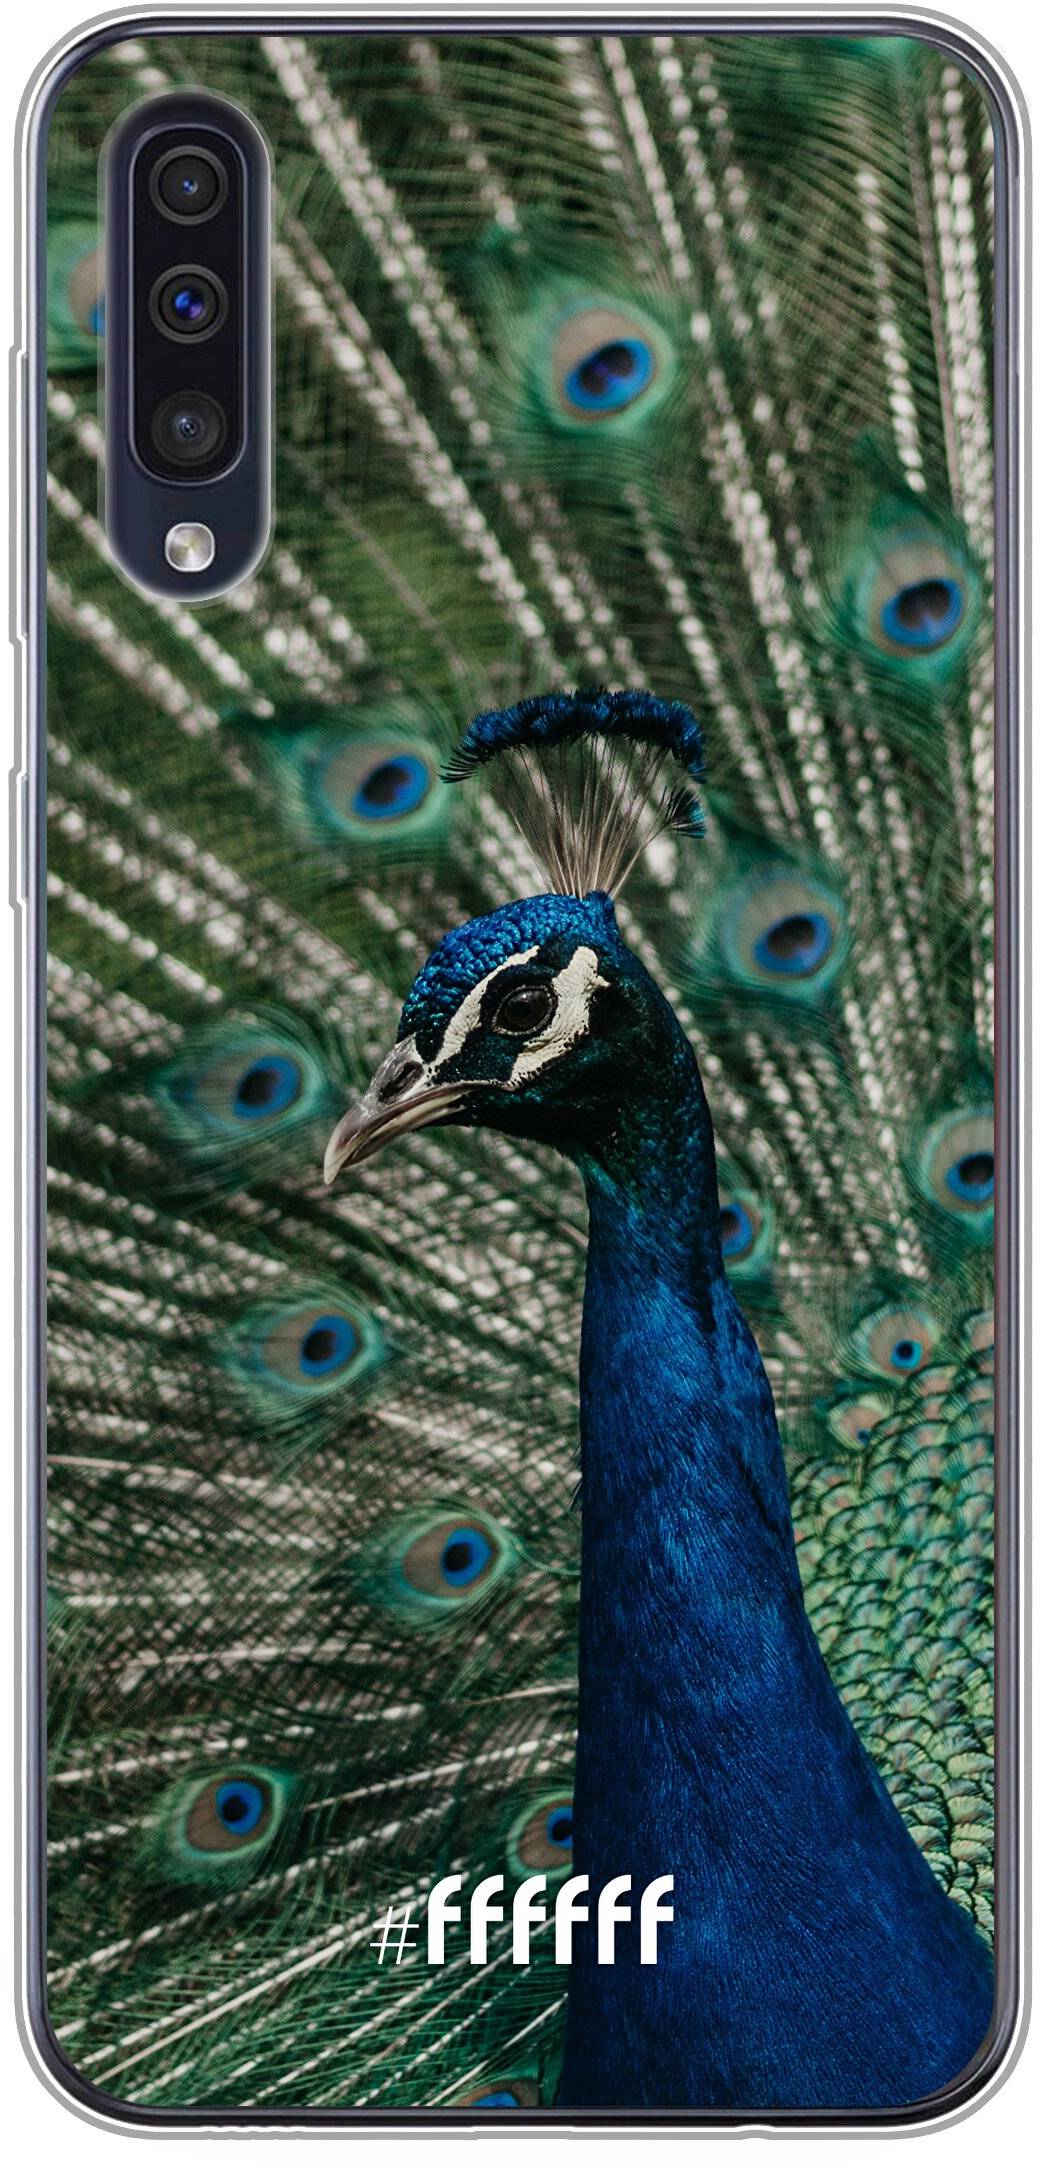 Peacock Galaxy A30s